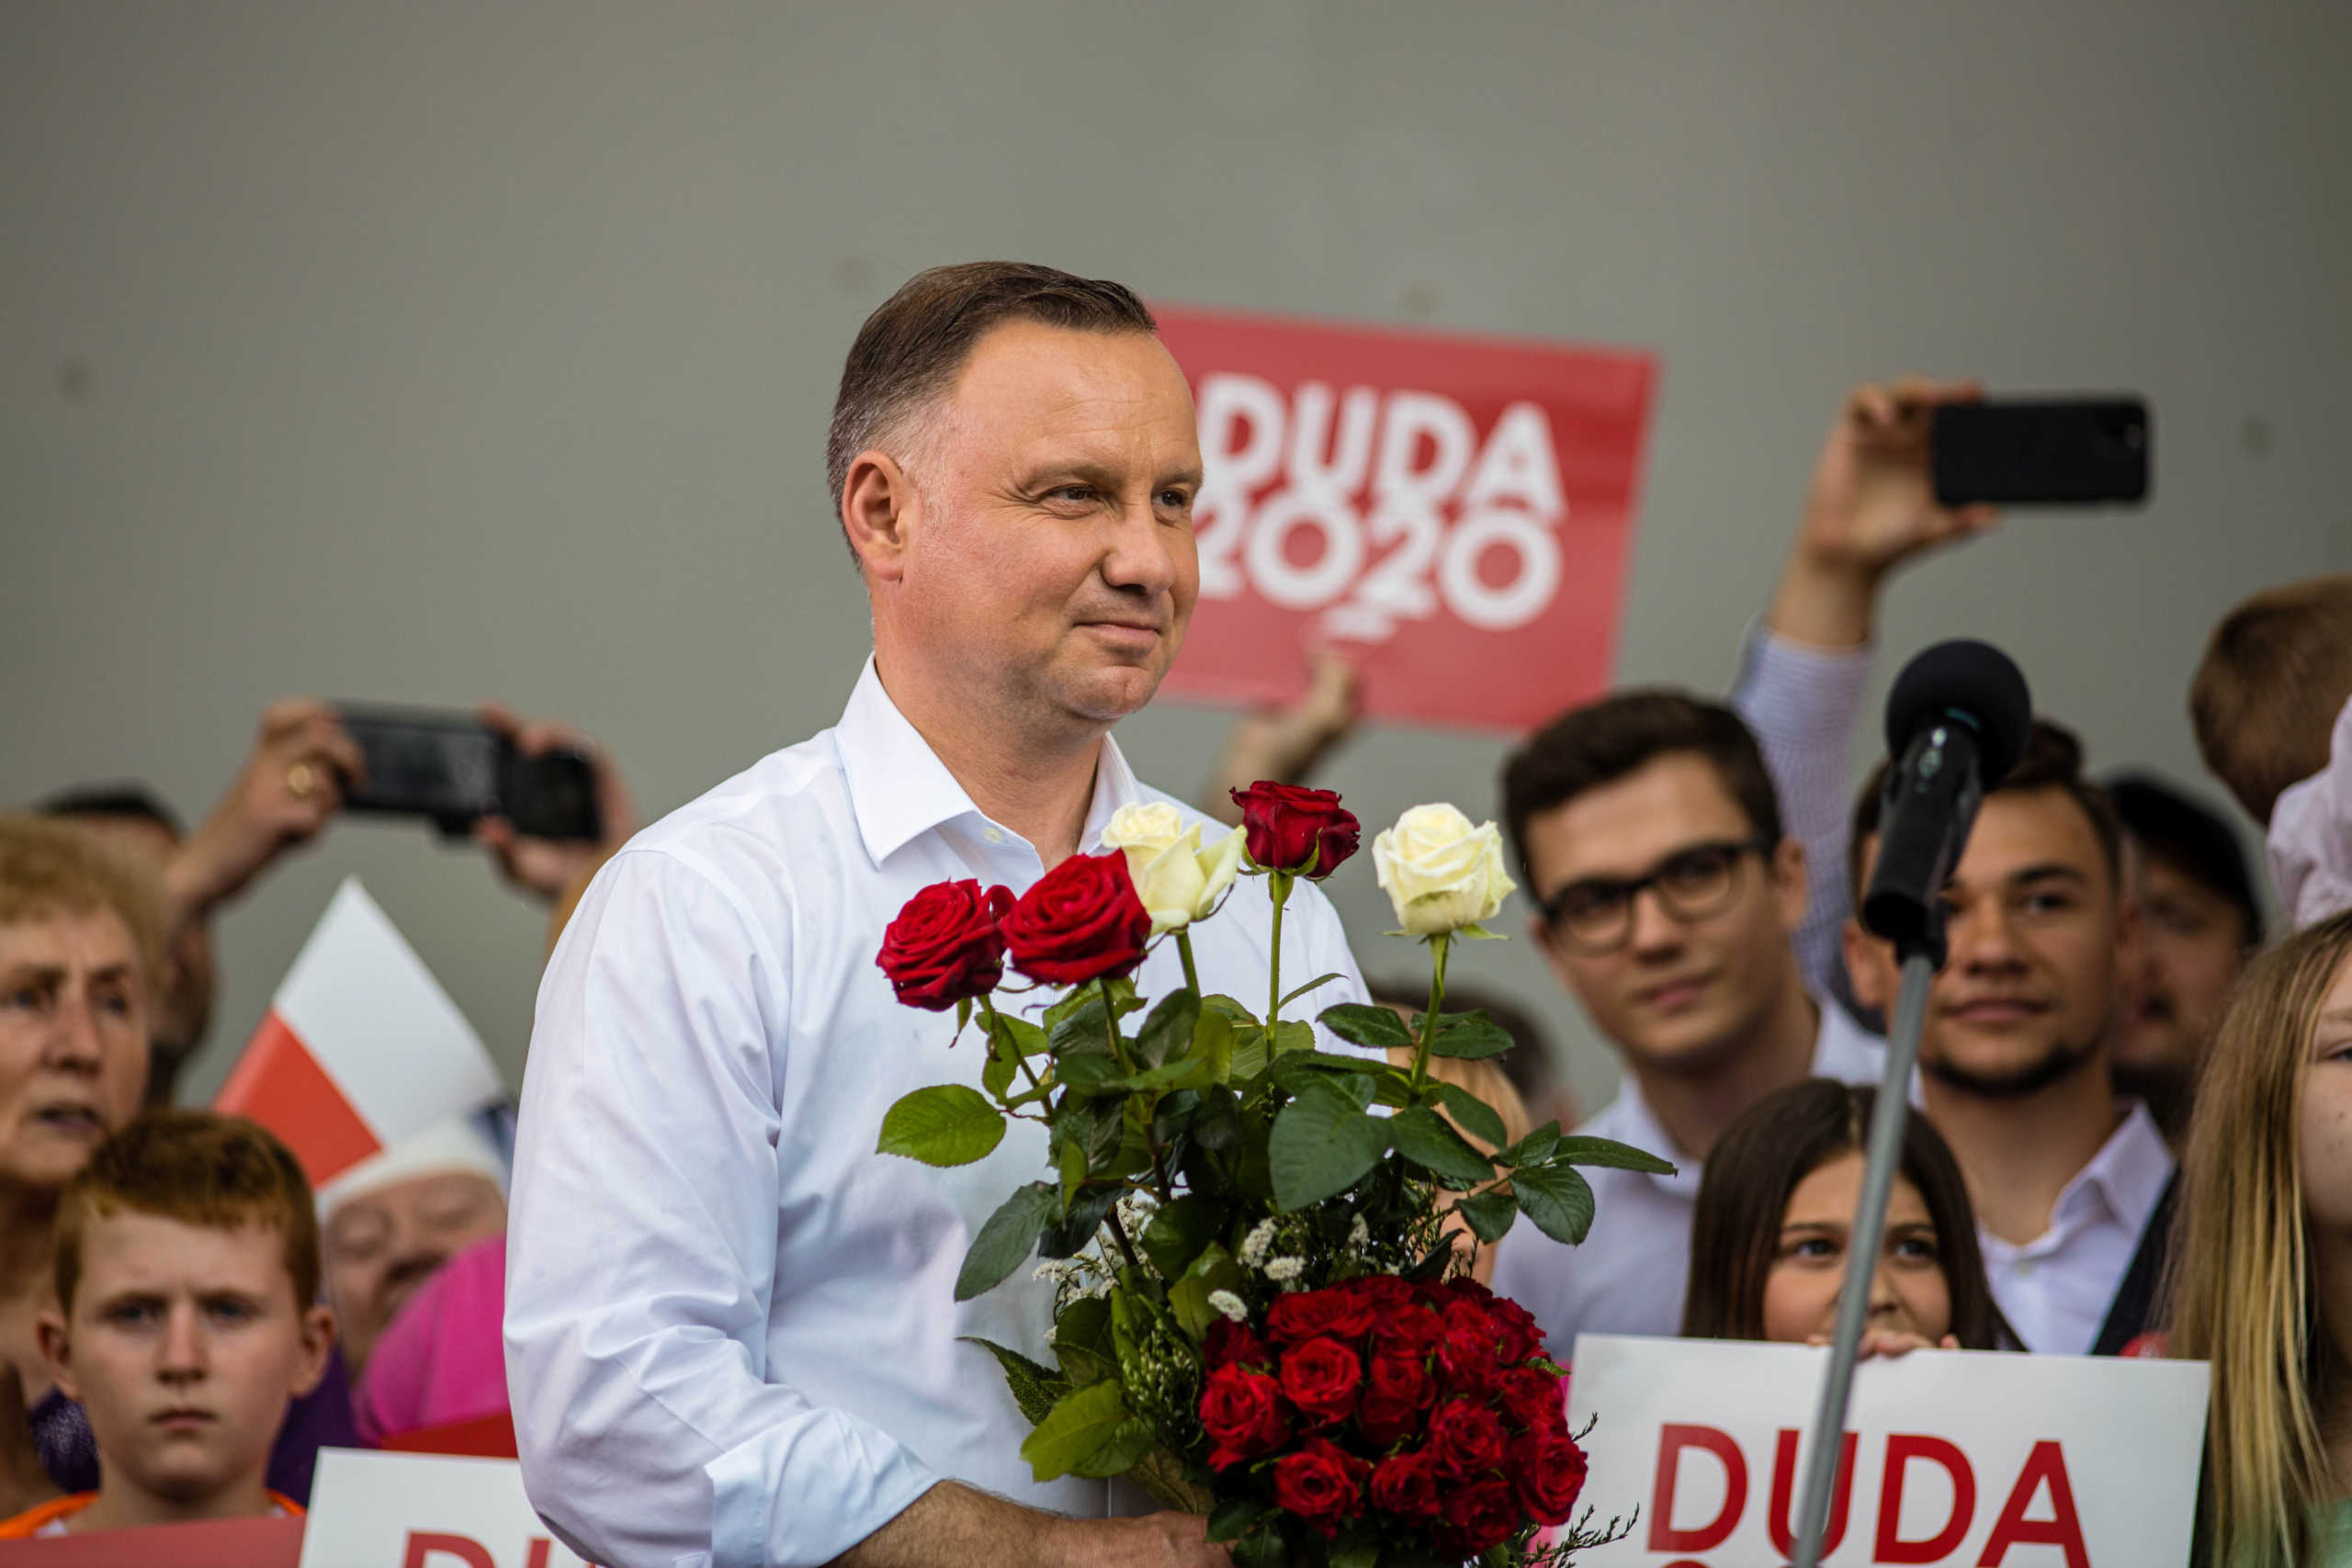 Πολωνία: Νικητής του πρώτου γύρου εκλογών ο Ντούντα